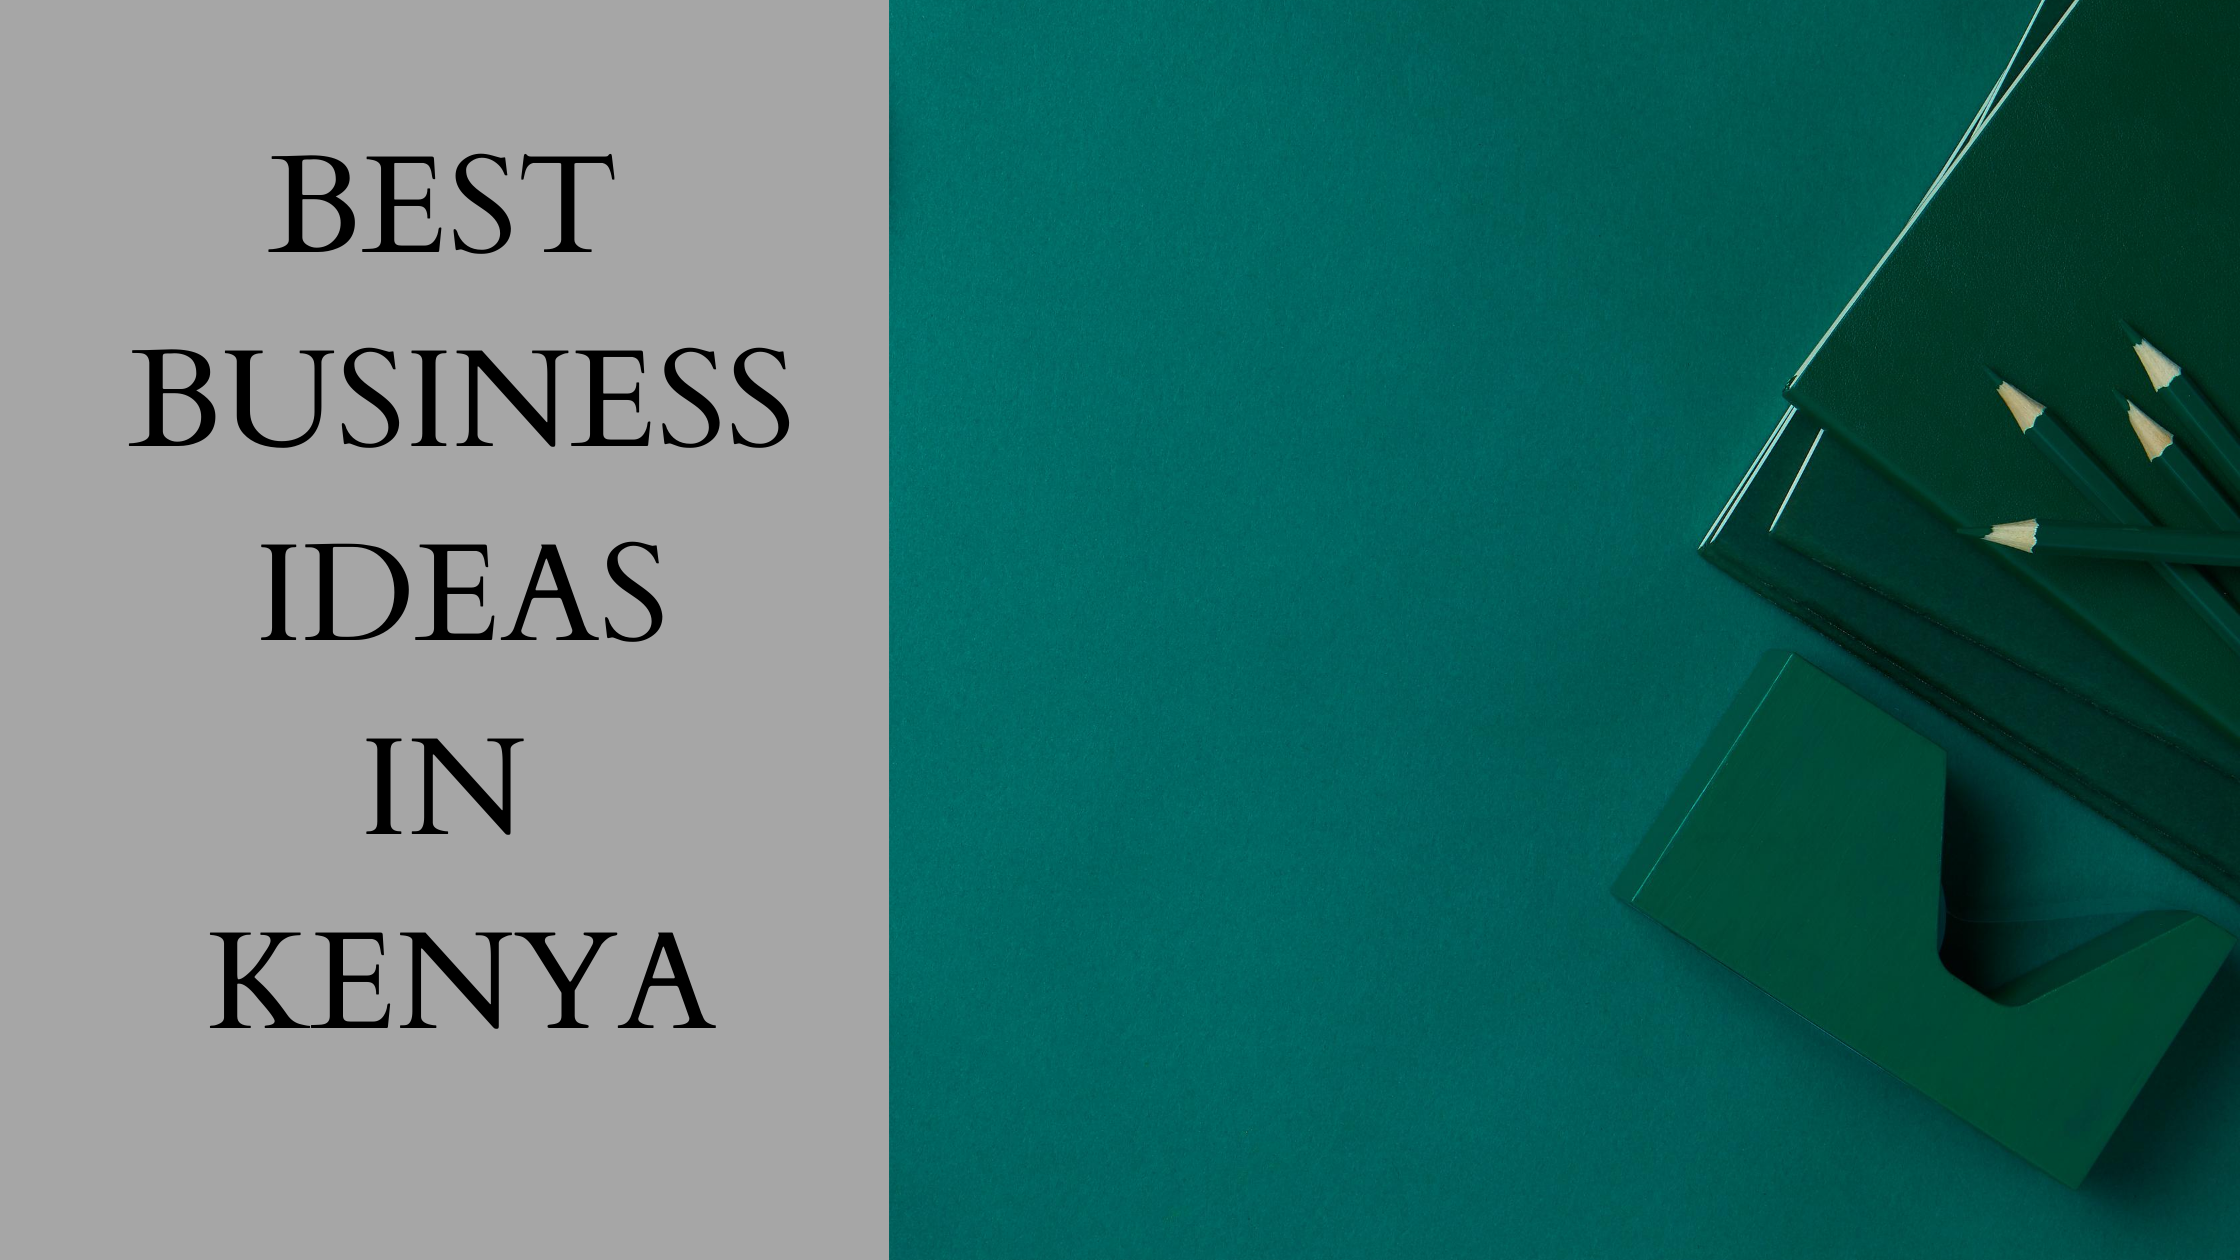 Best Business Ideas In Kenya - Jengacash Blog